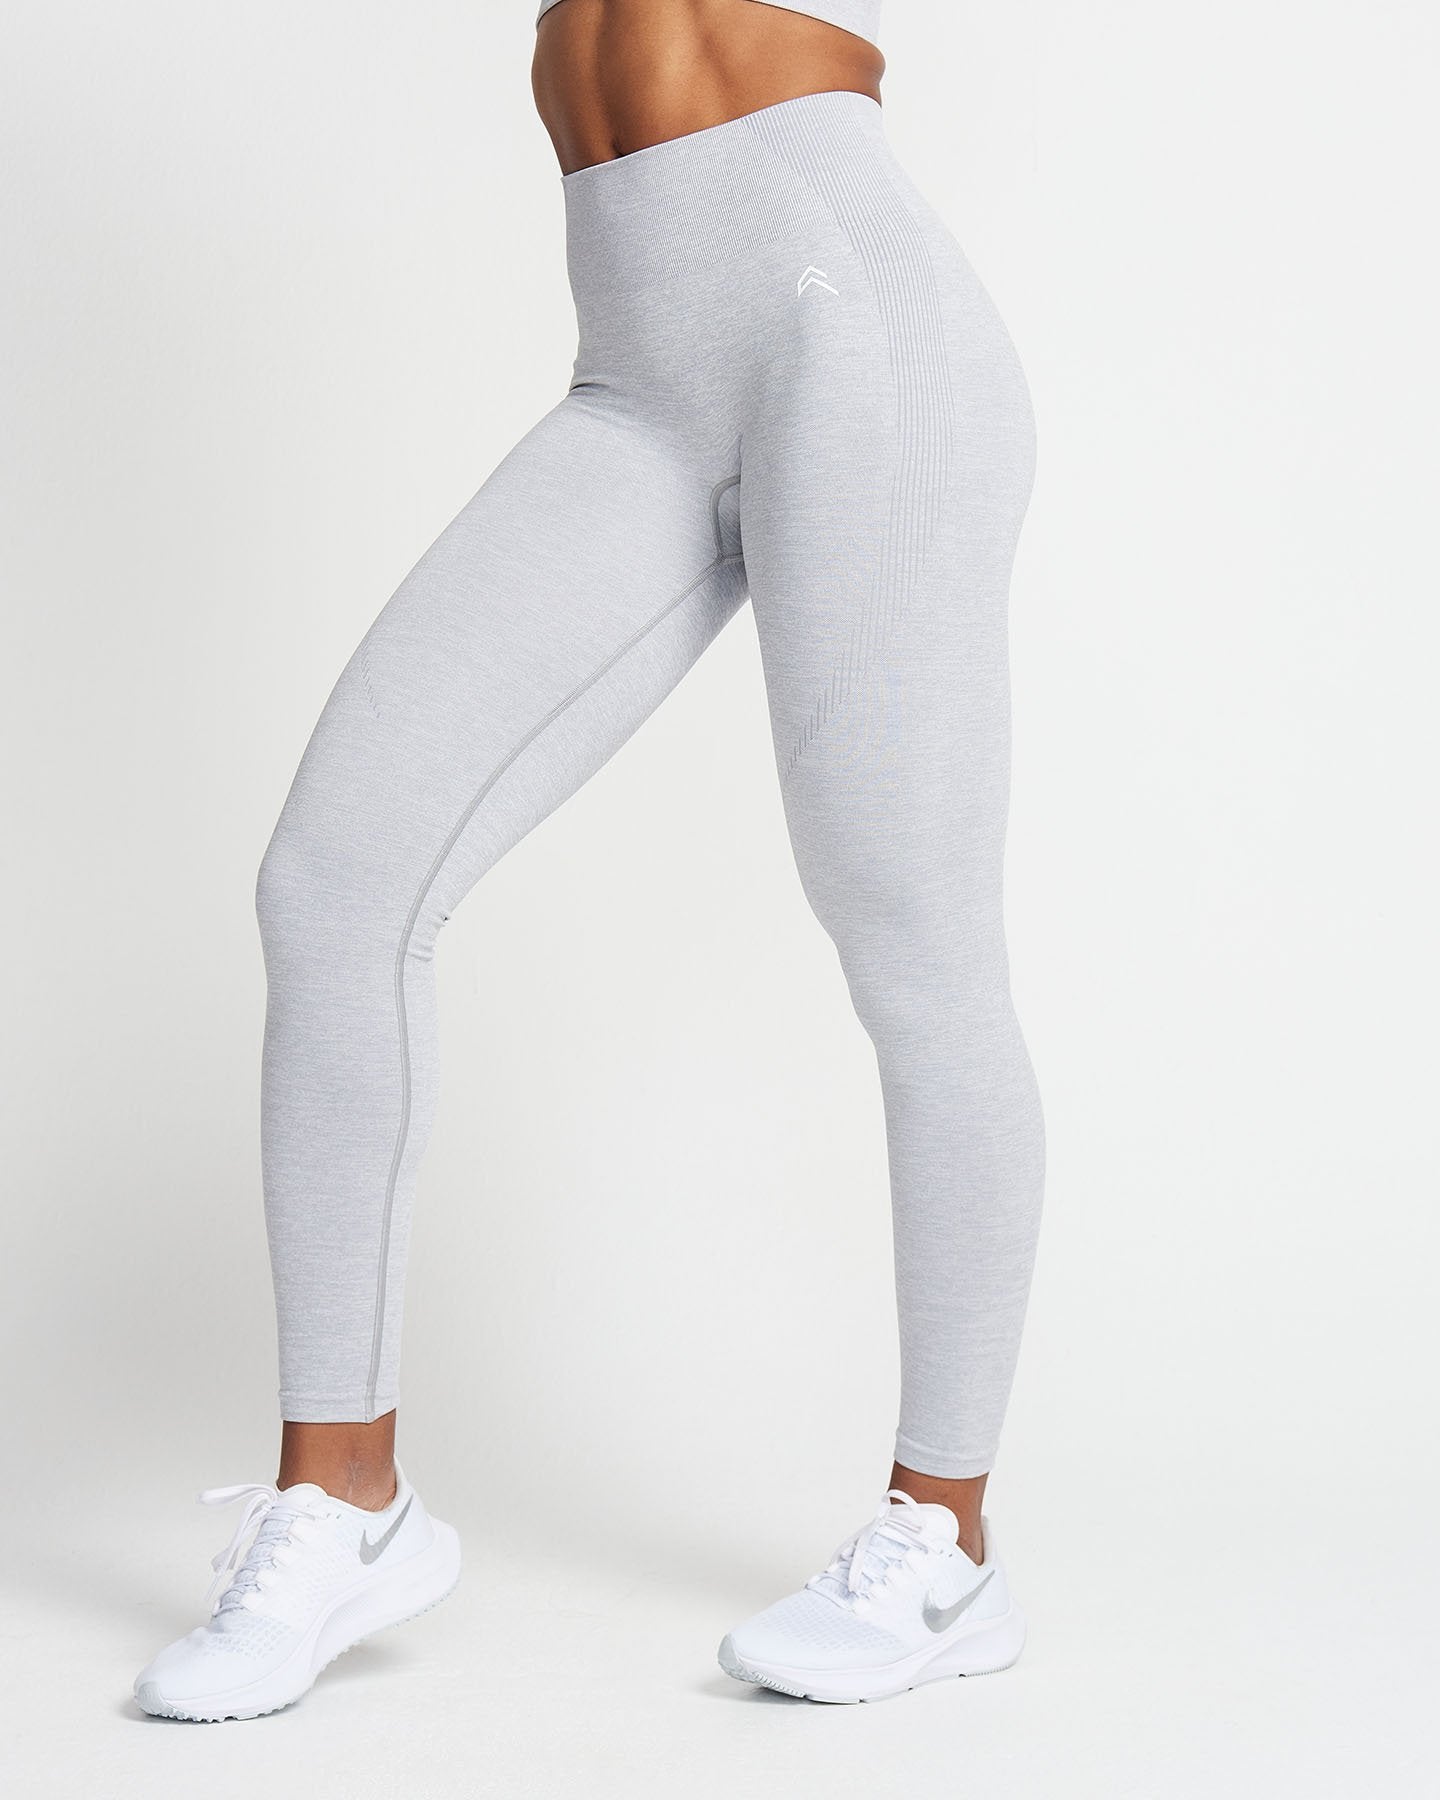 Active Yoga Pants in Grey Marl – SistersandSeekers